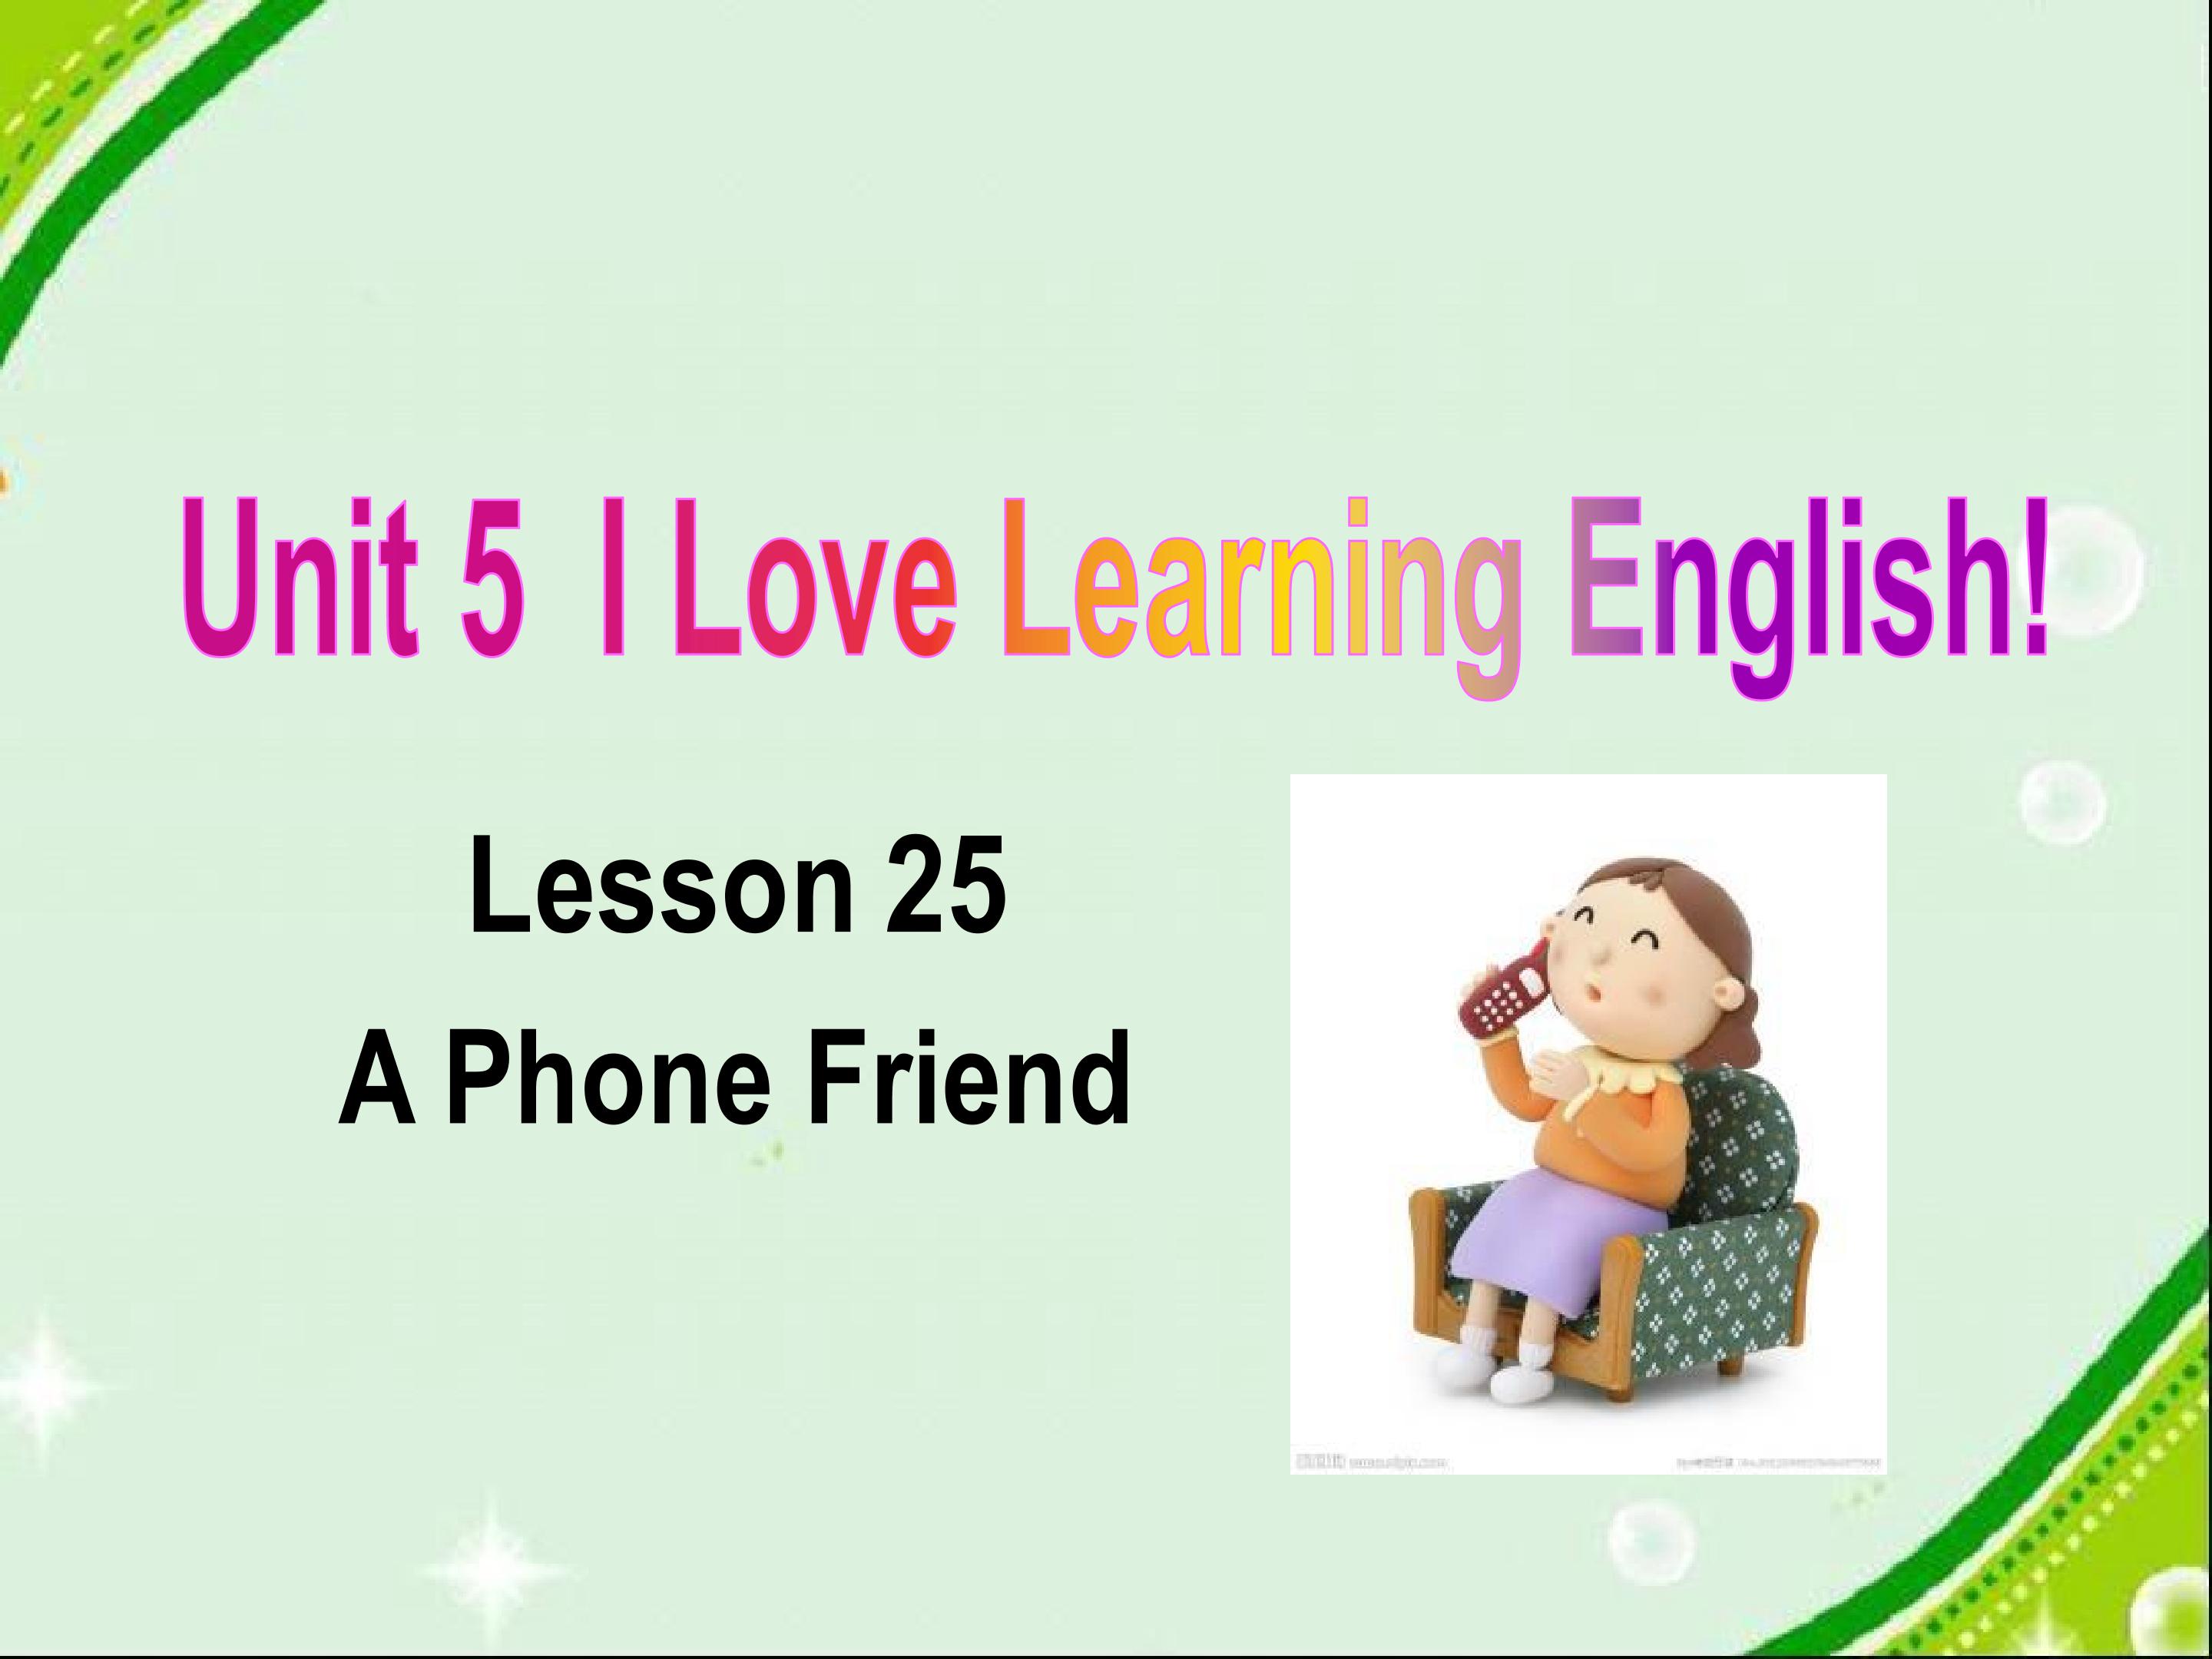 Lesson25: A Phone Friend